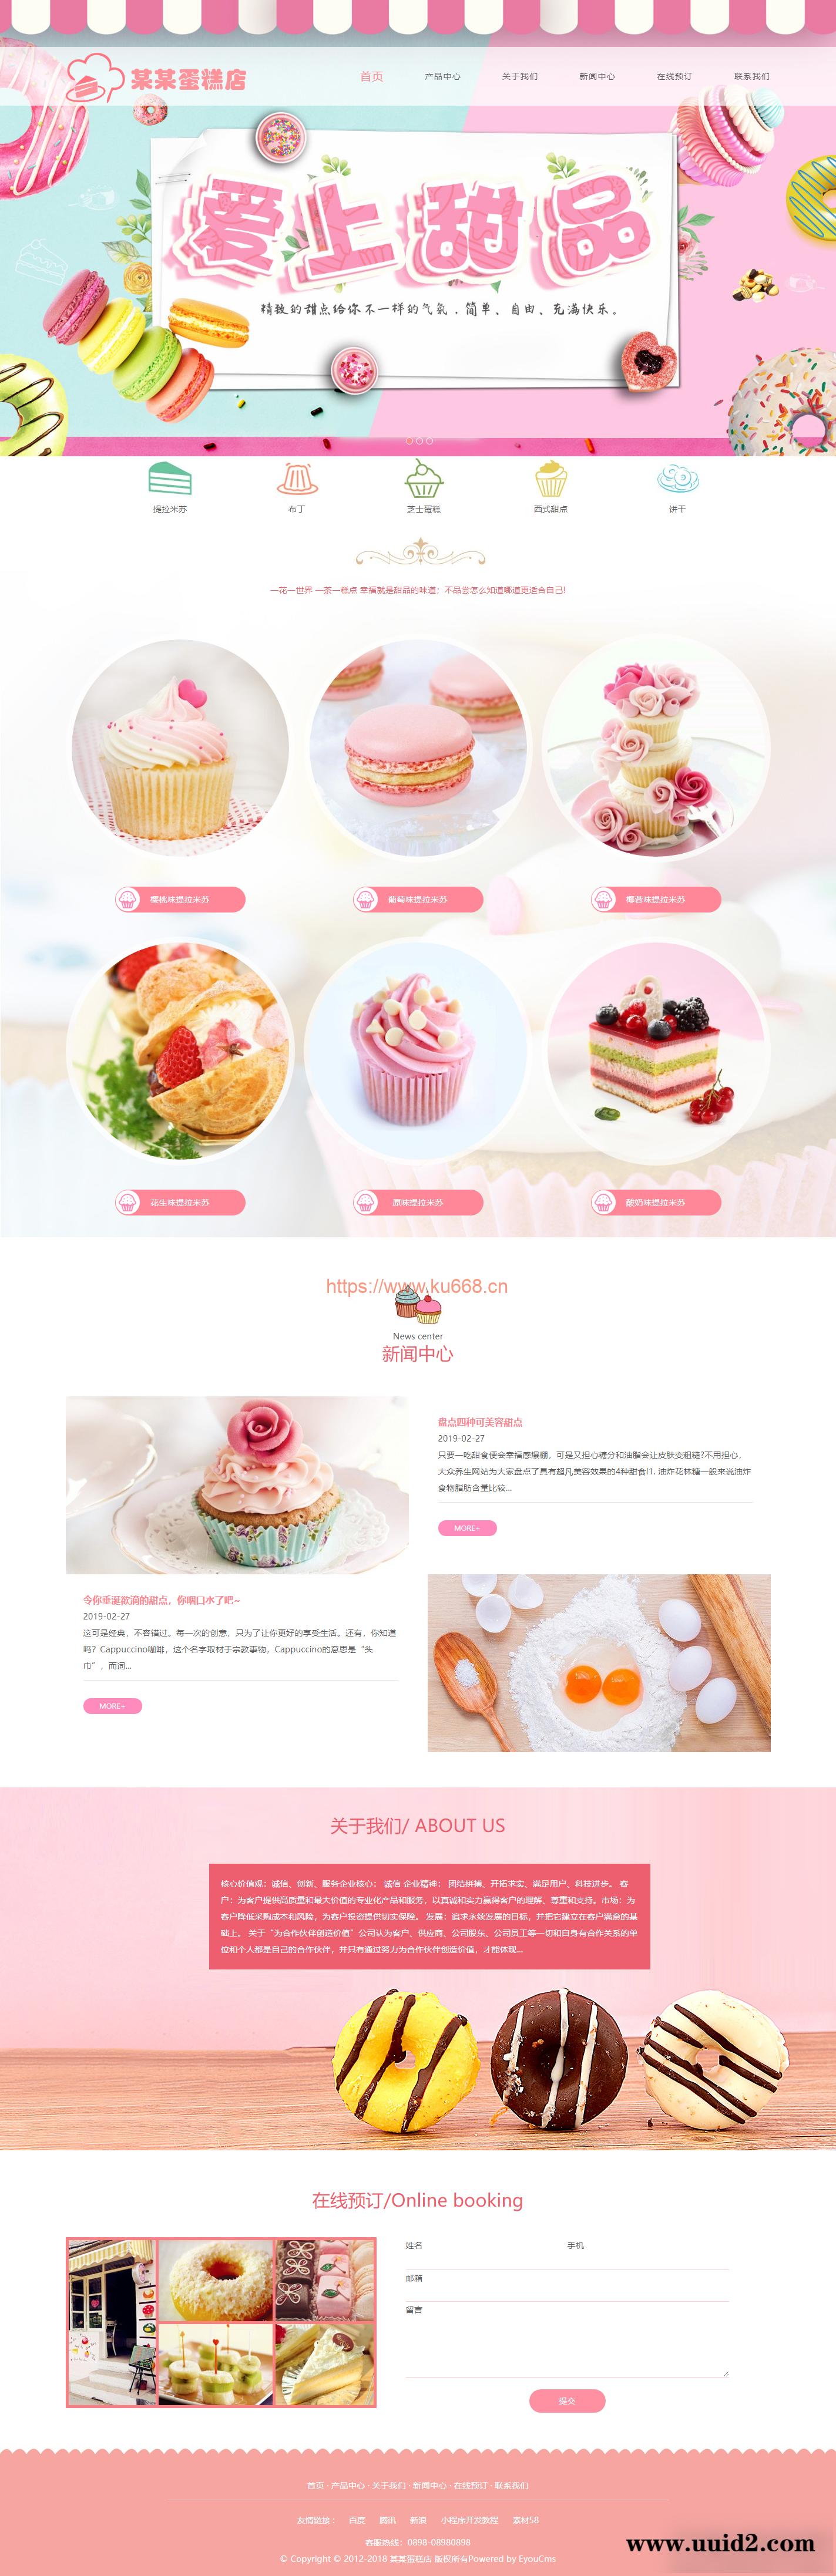 PHP美食甜点蛋糕店网站模板源码 带手机端+后台